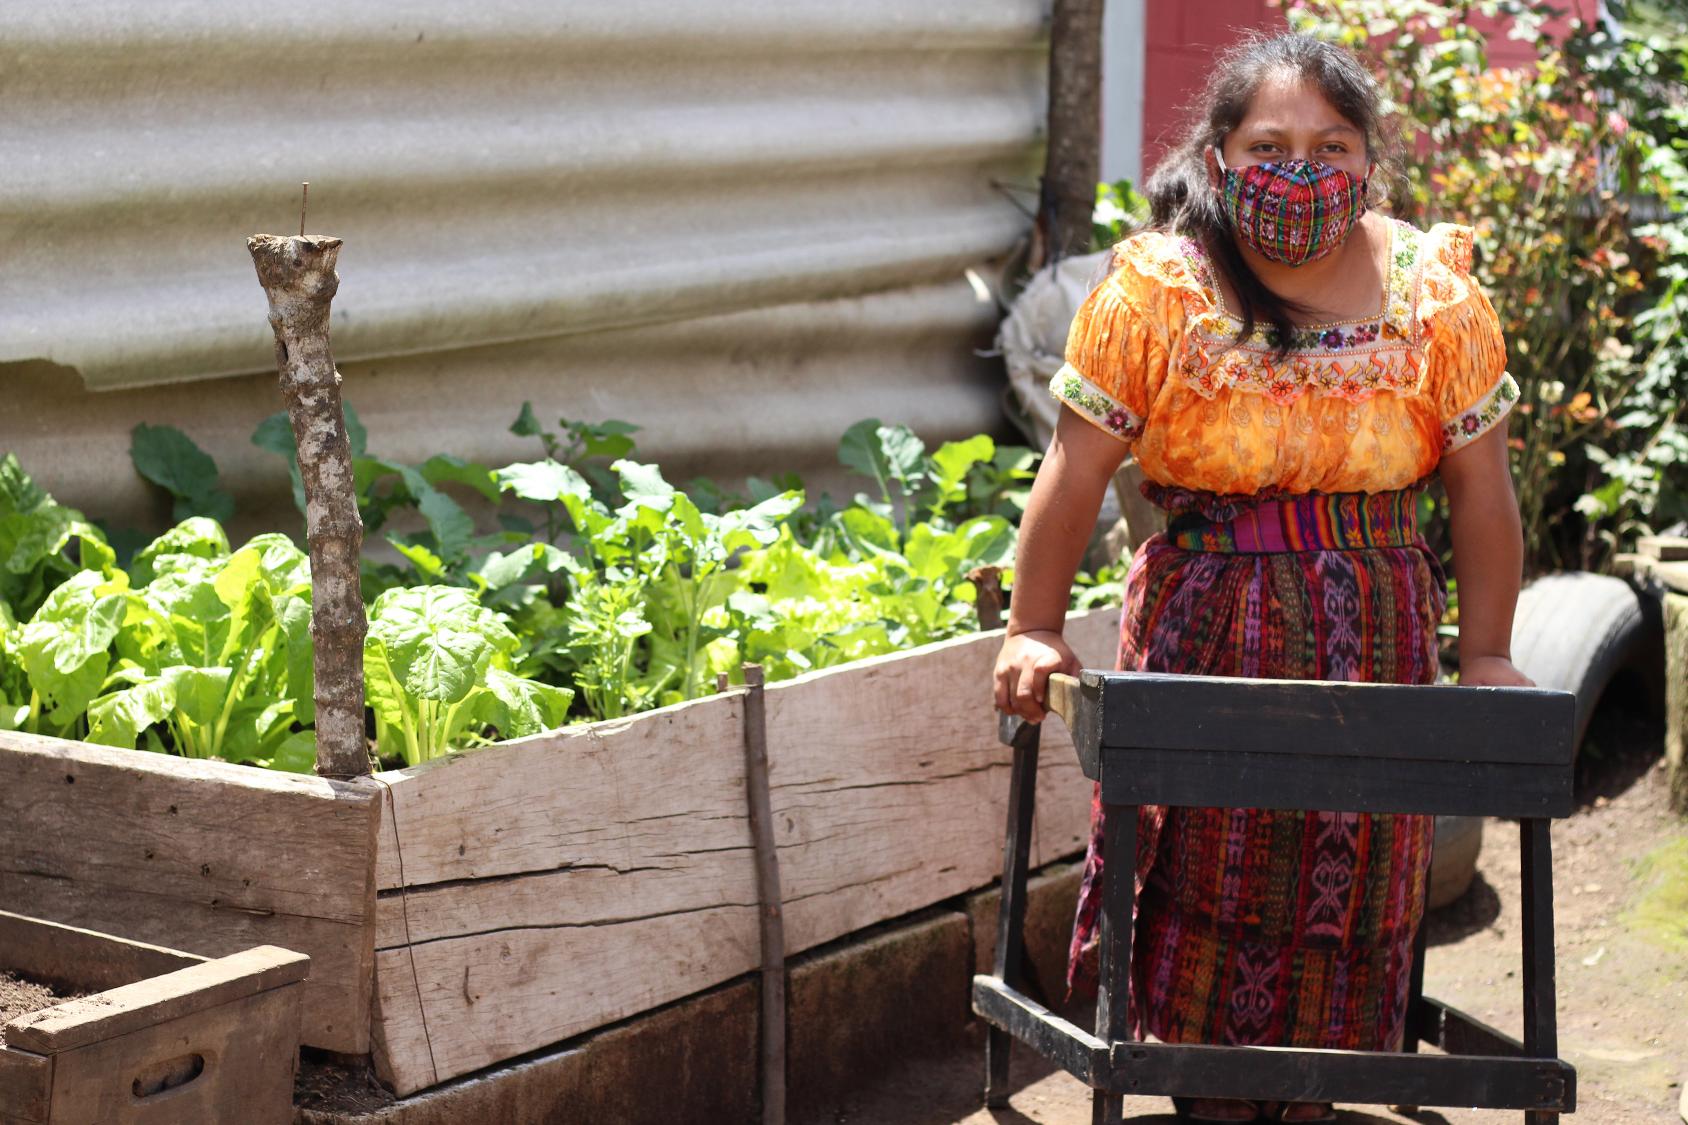 امرأة من السكان الأصليين تعاني من إعاقة بدنية تقف بجانب مجموعة من النباتات.